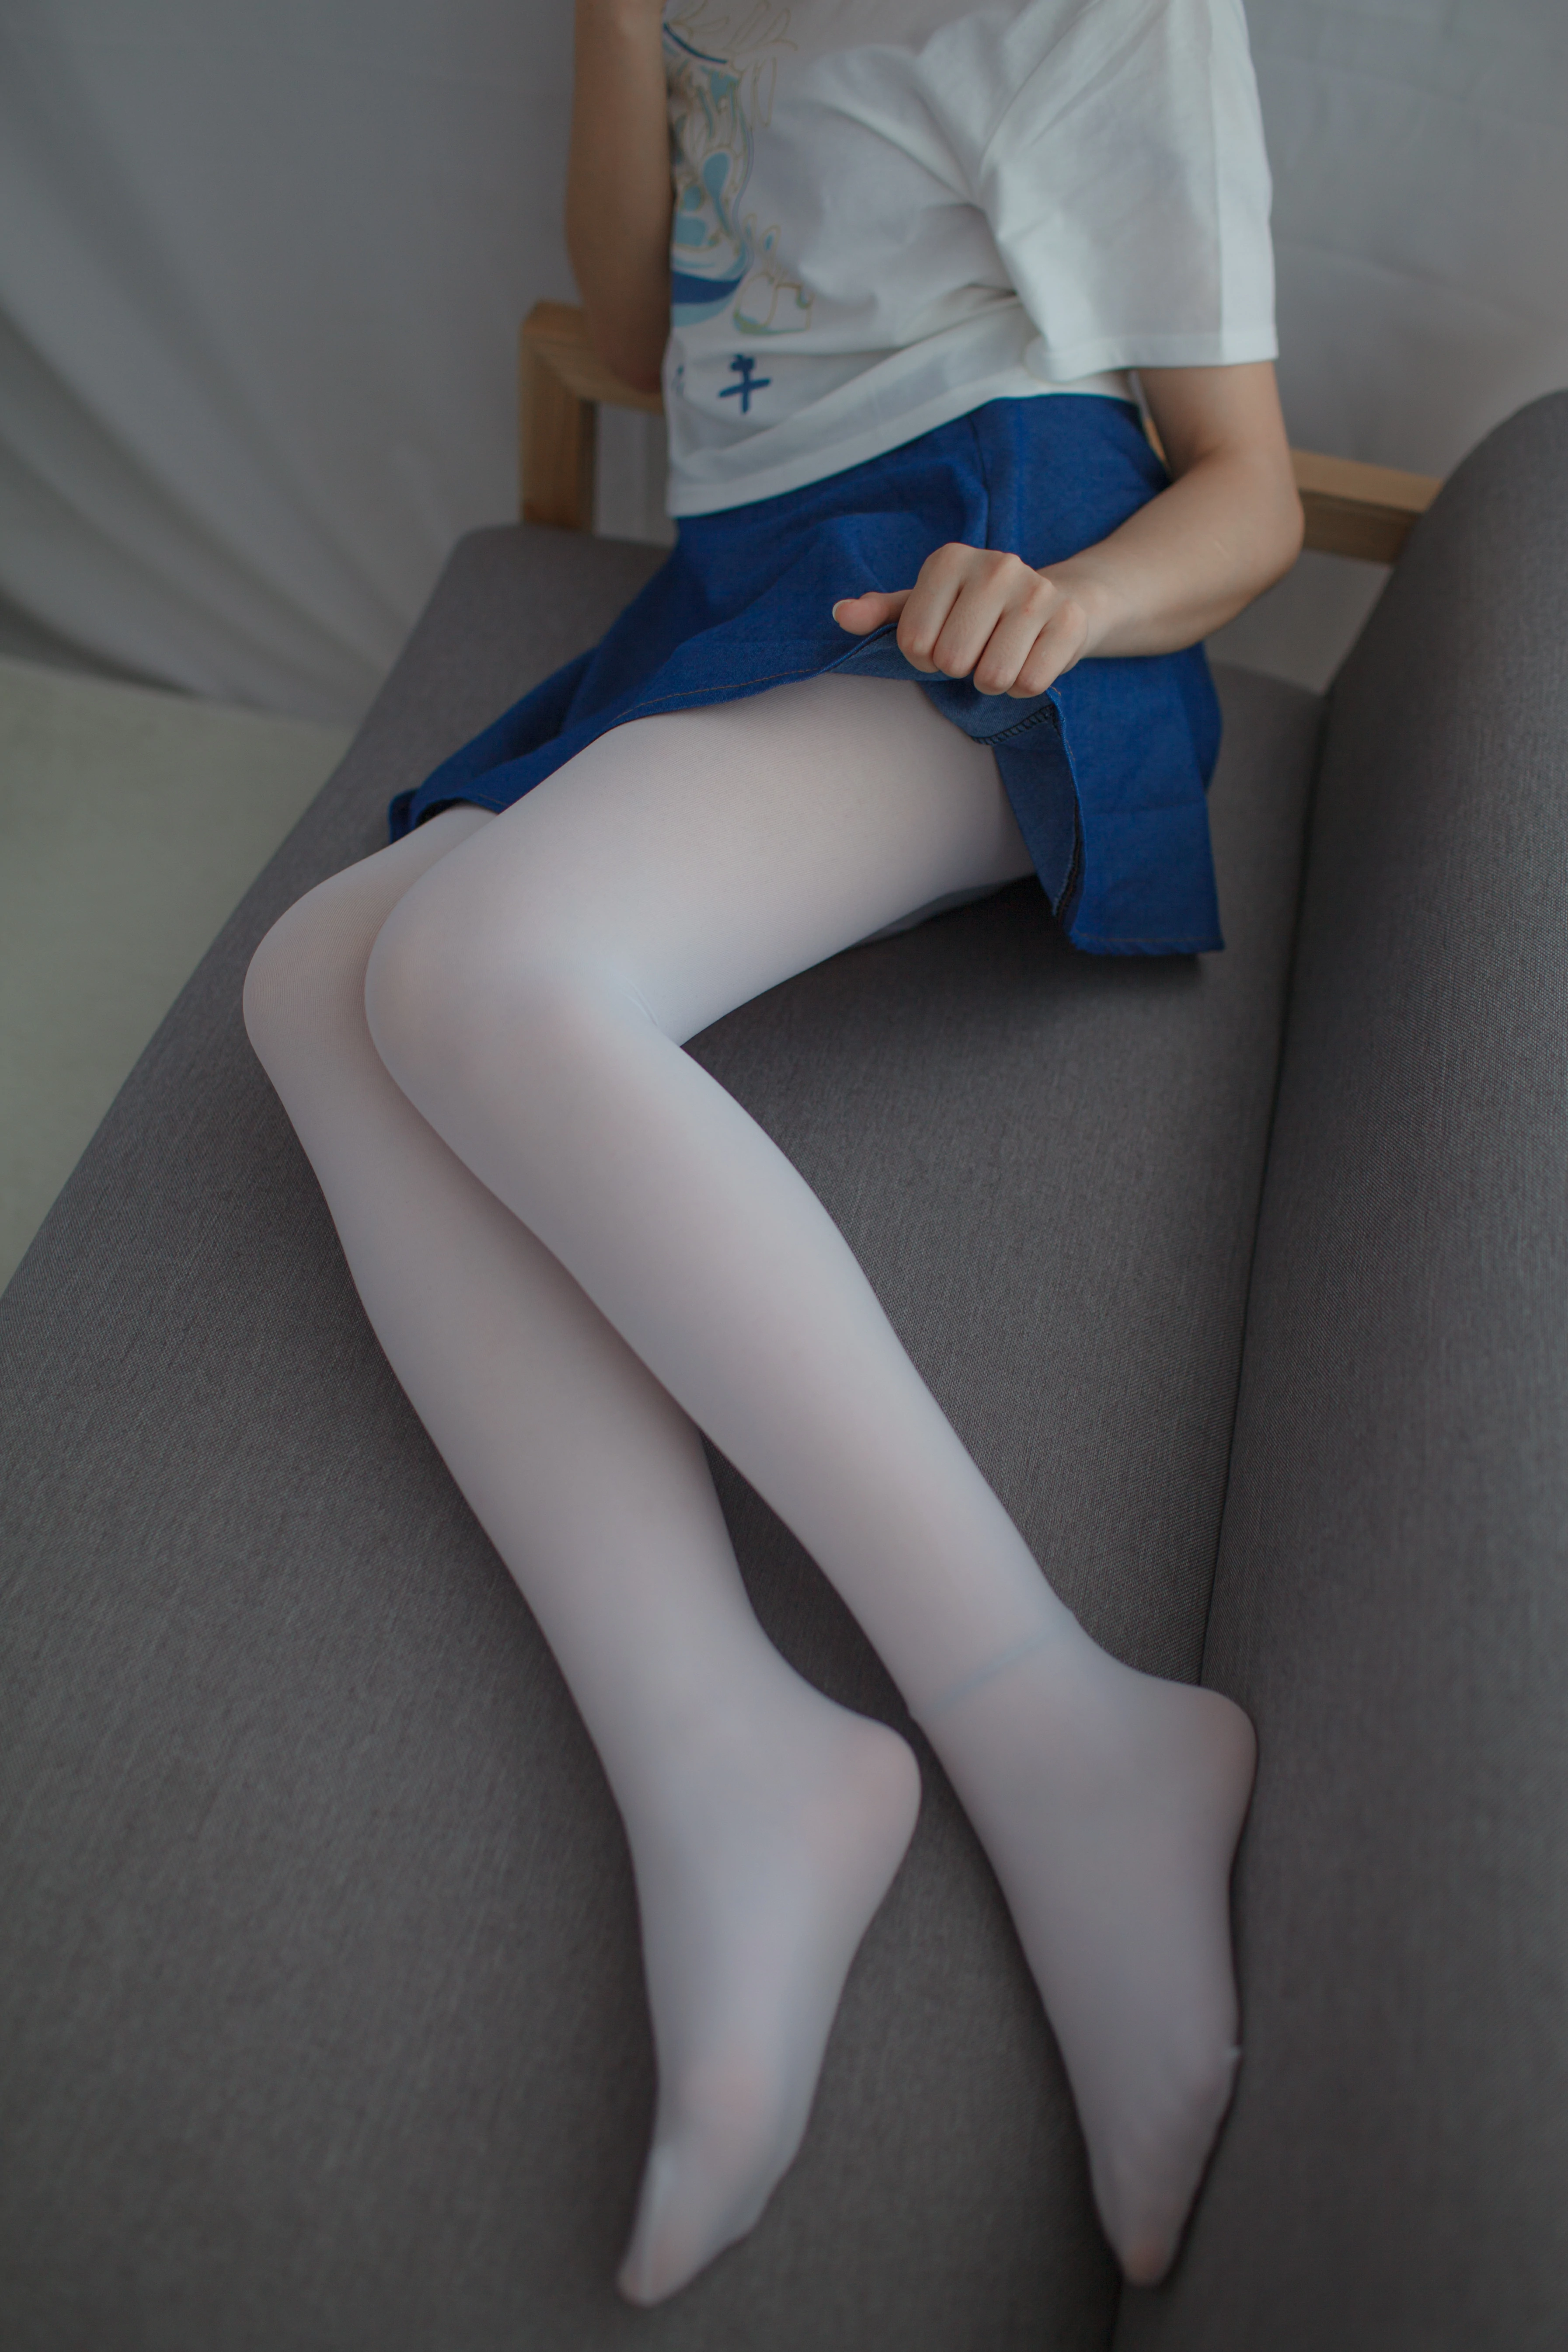 [少女秩序]群内福利03 清纯少女 白色短袖与蓝色短裙加白色丝袜美腿性感私房写真集,